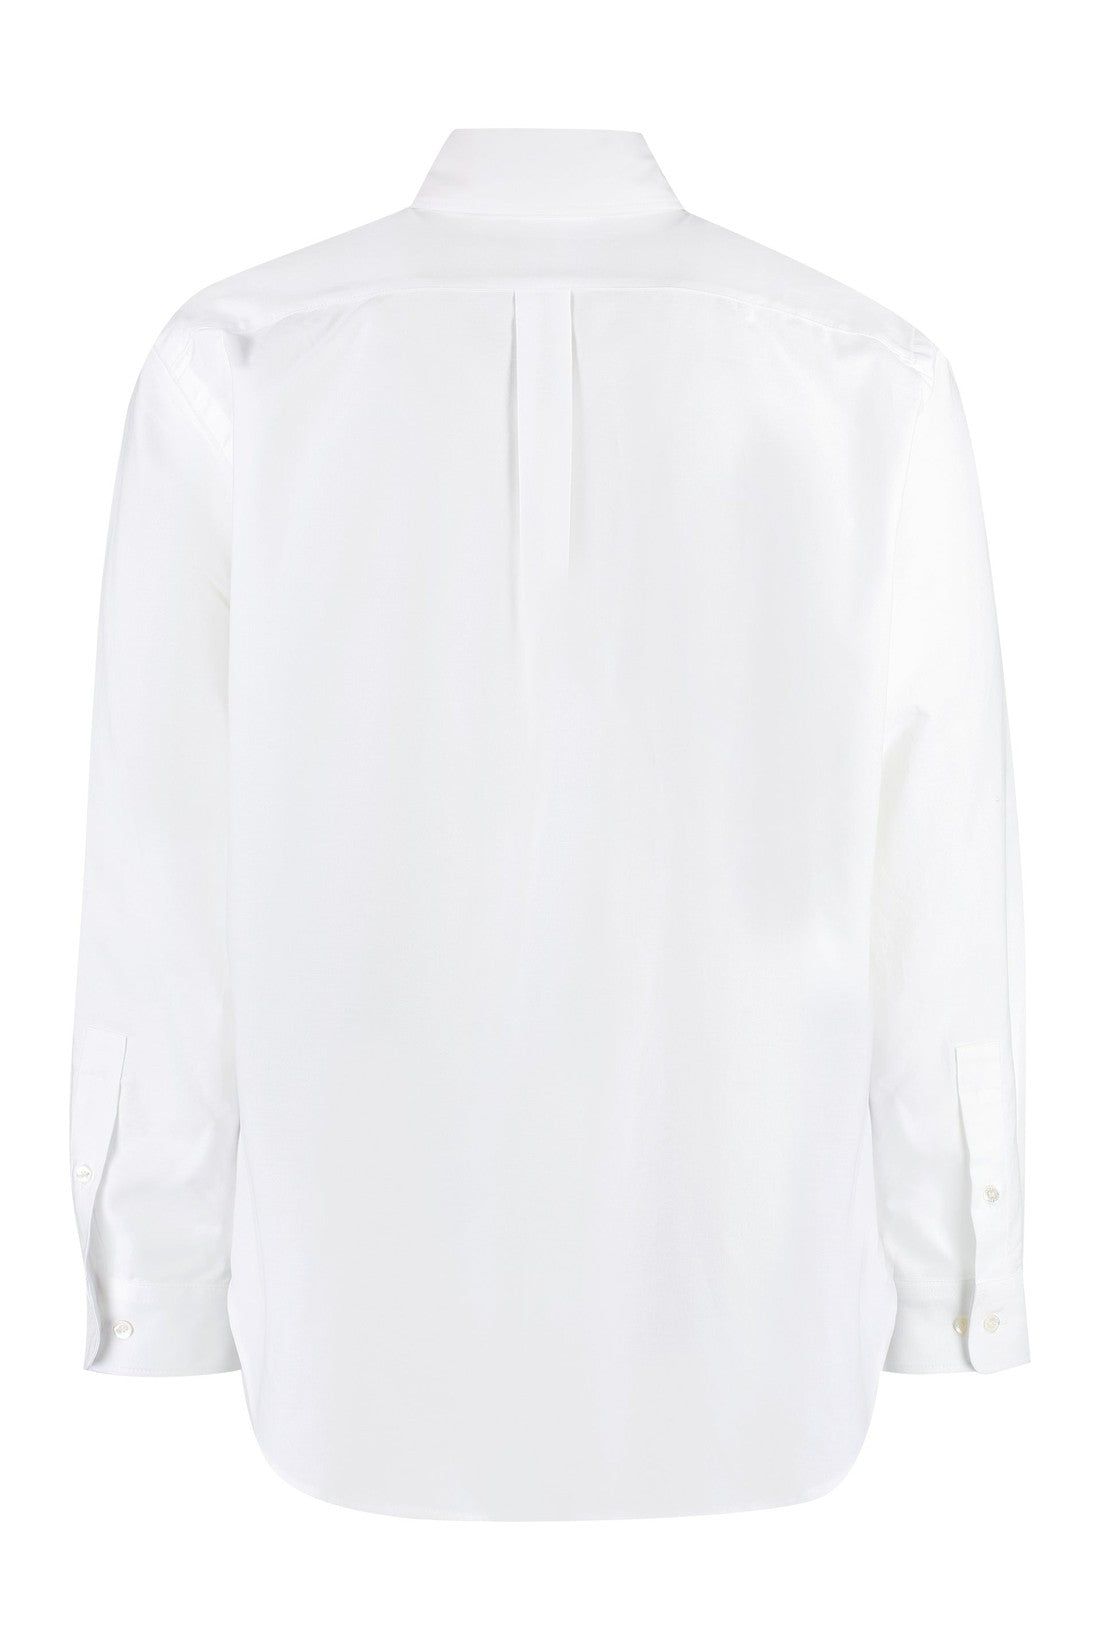 Palm Angels-OUTLET-SALE-Button-down collar cotton shirt-ARCHIVIST